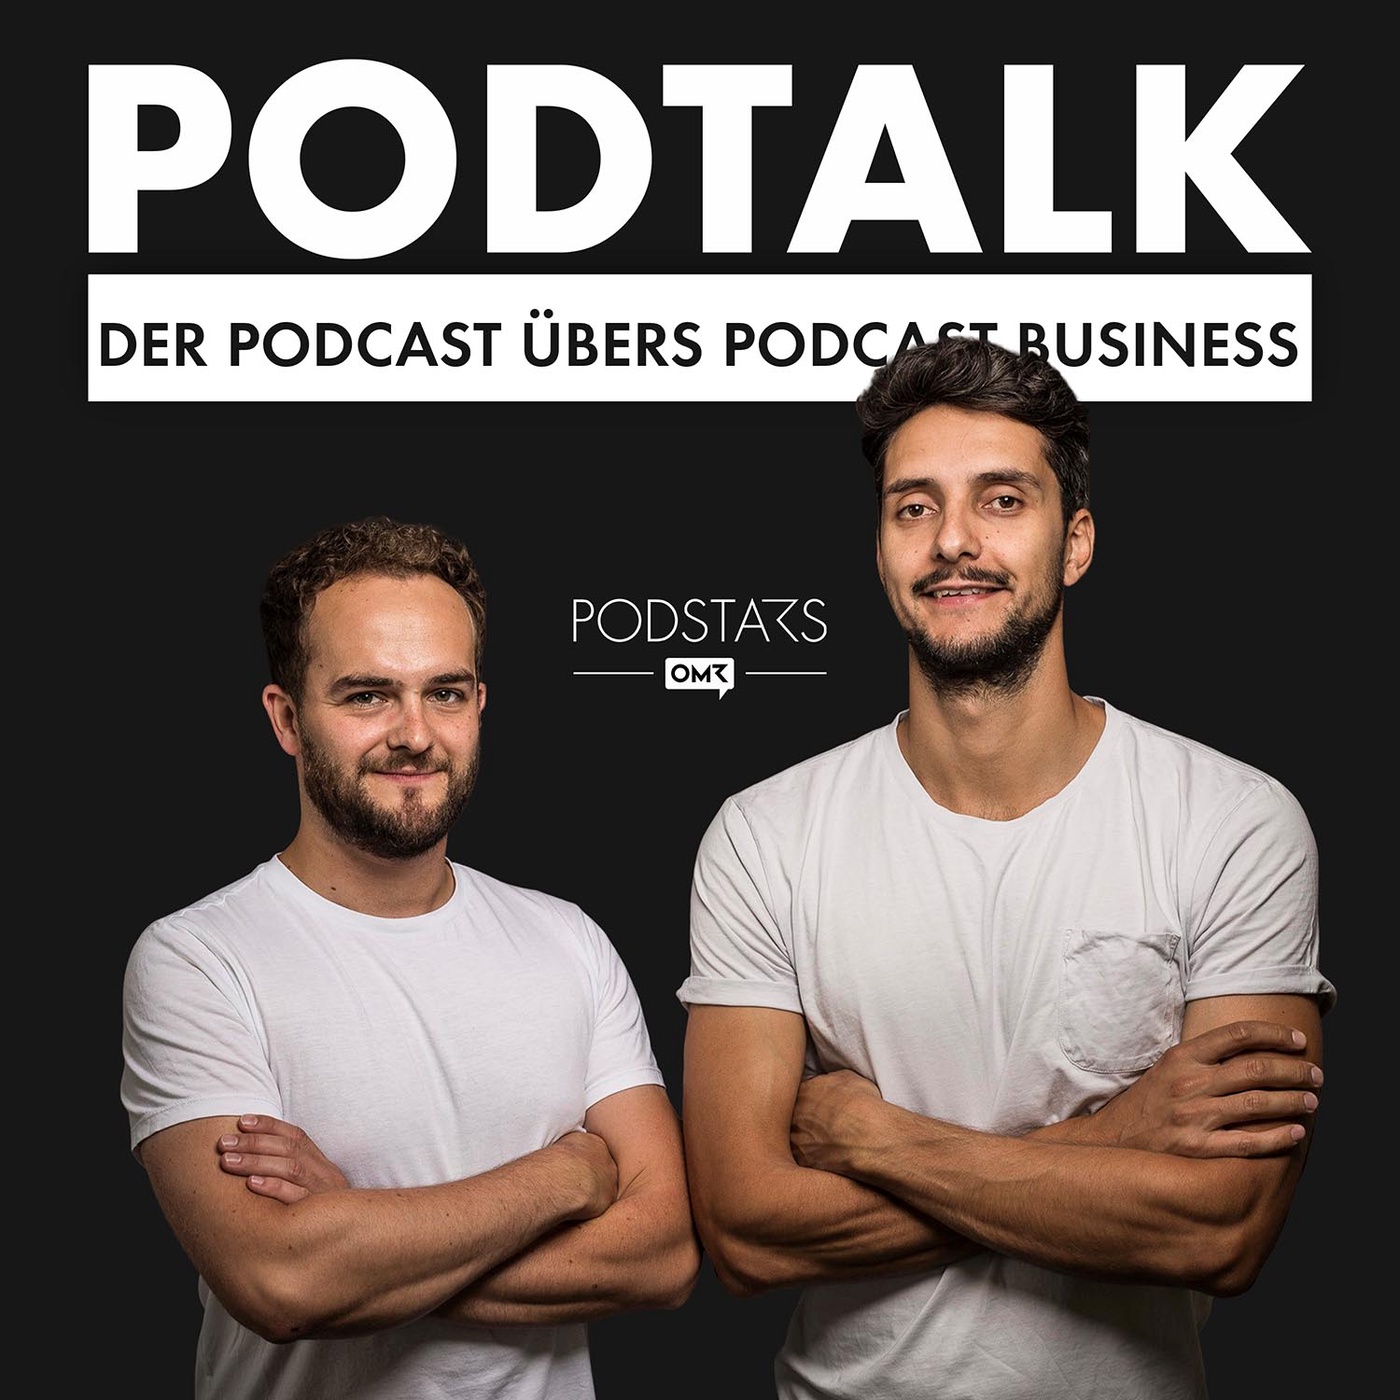 PodTalk #41: Der Daily Podcast Trend - mit Noah Leidinger, Host von OAWS